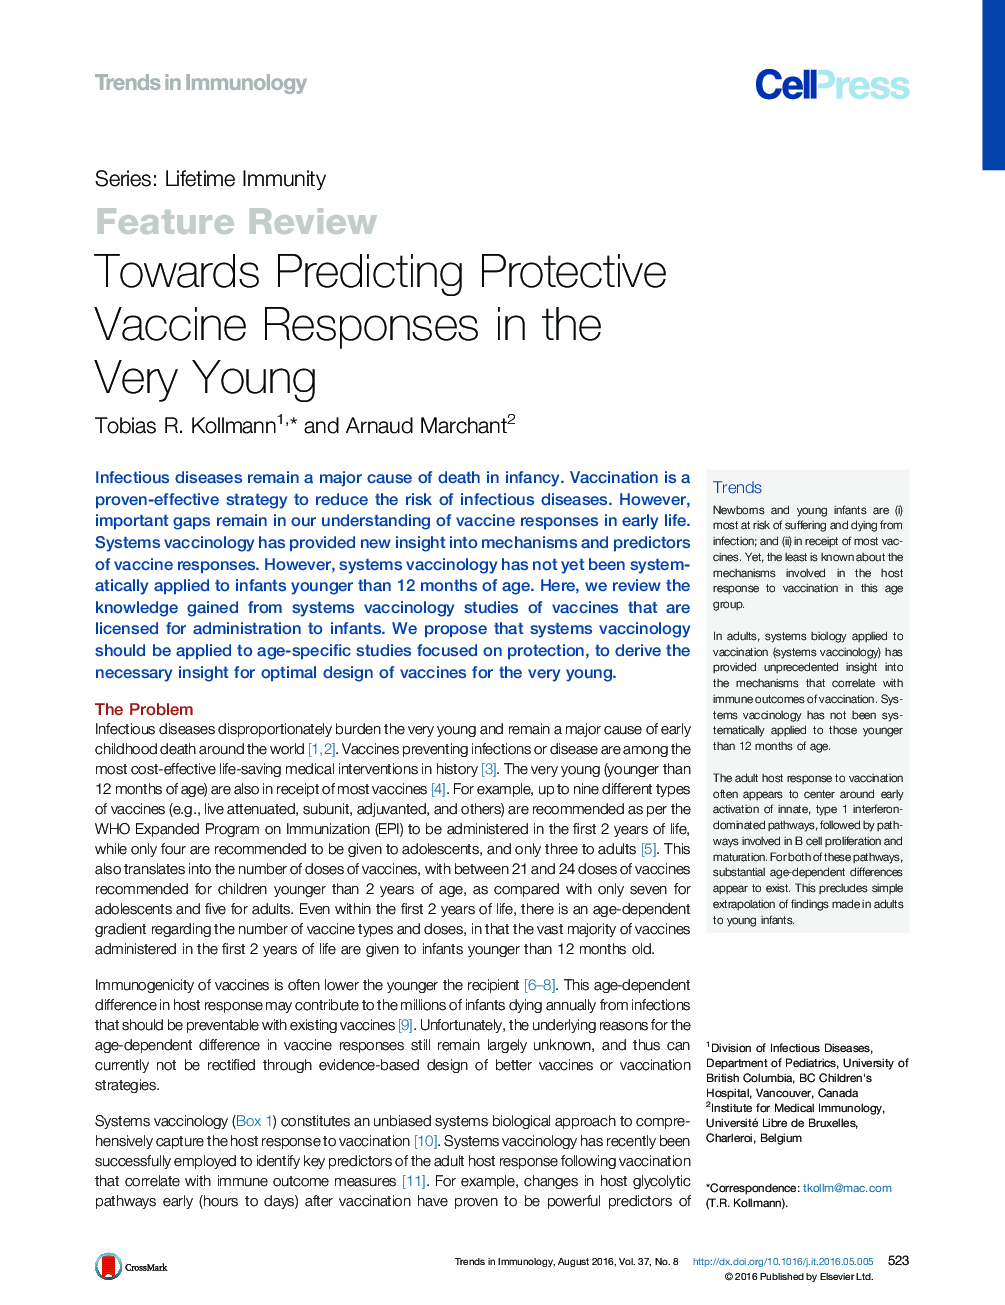 به سوی پیش بینی واکنش های محافظتی واکسن در جوانان 